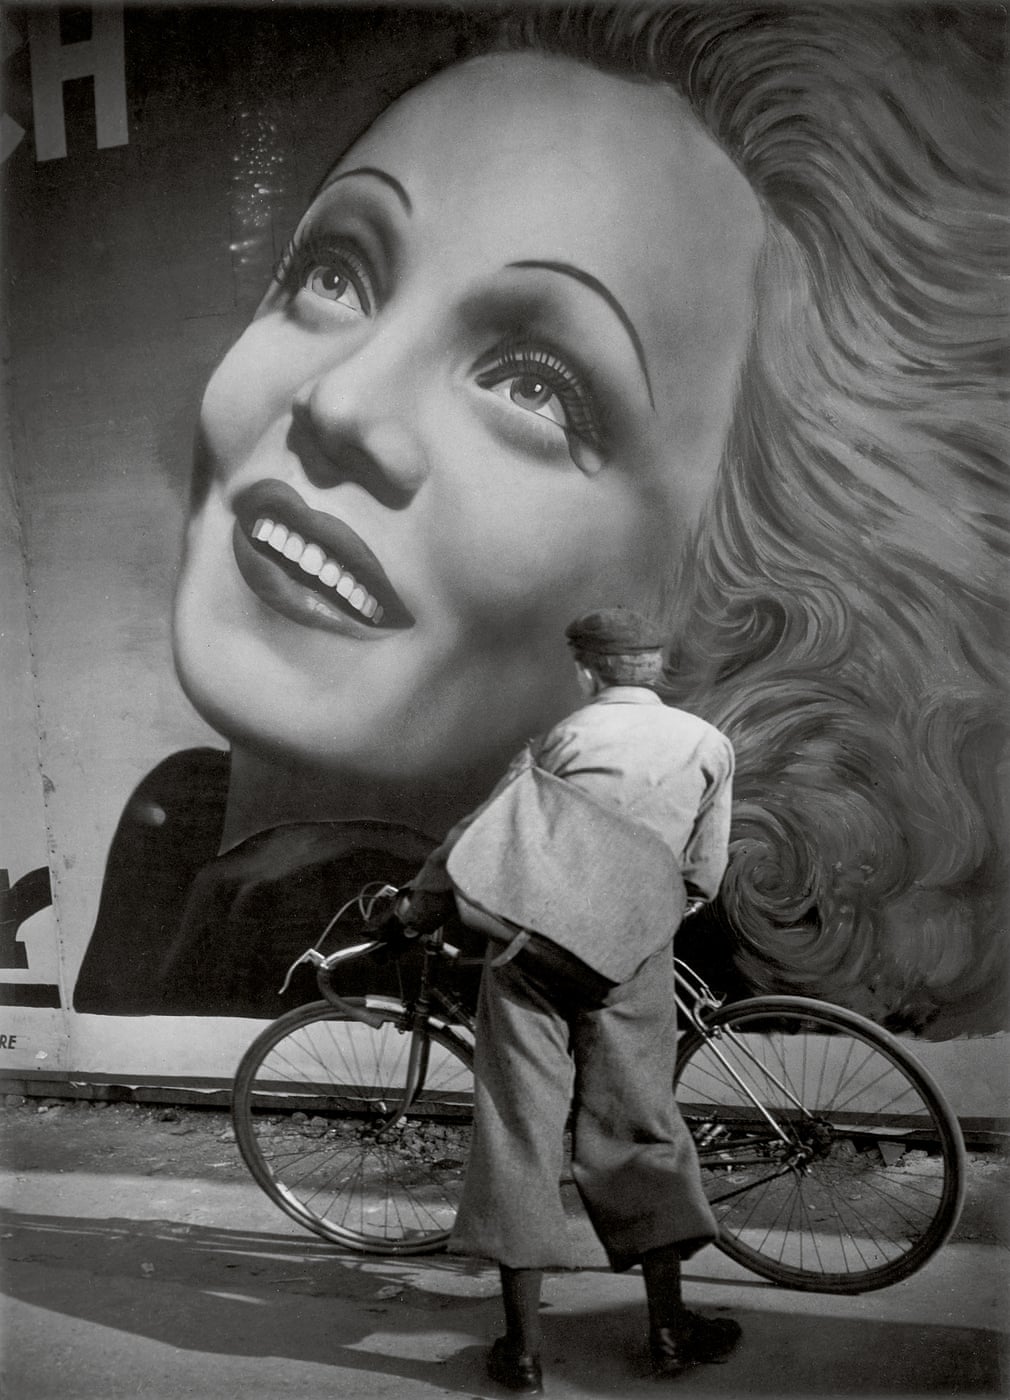 Untitled, Paris, 1937